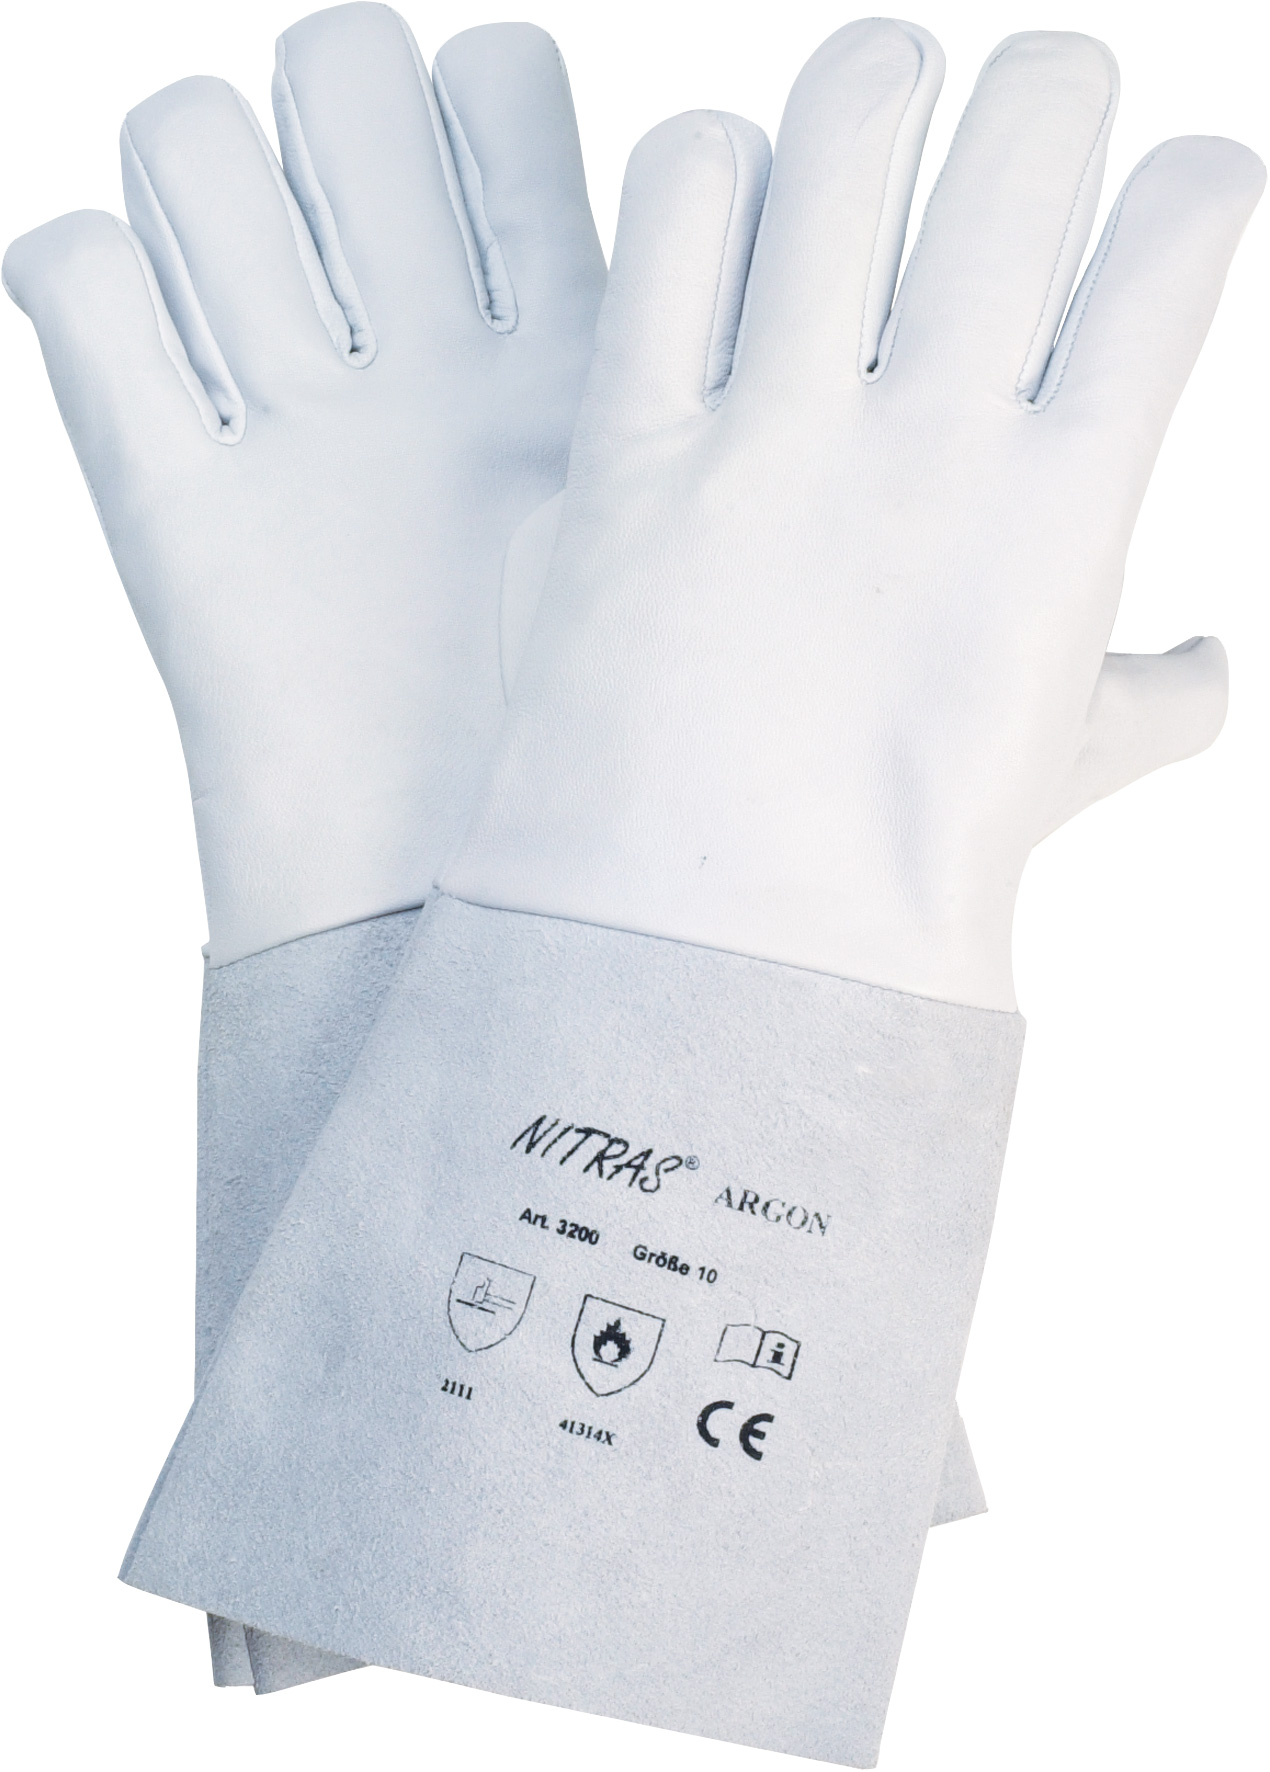 ARGON Nappaleder-Handschuh mit Spaltstulpe, Gesamtlänge 35cm, eingesetzter Daumen